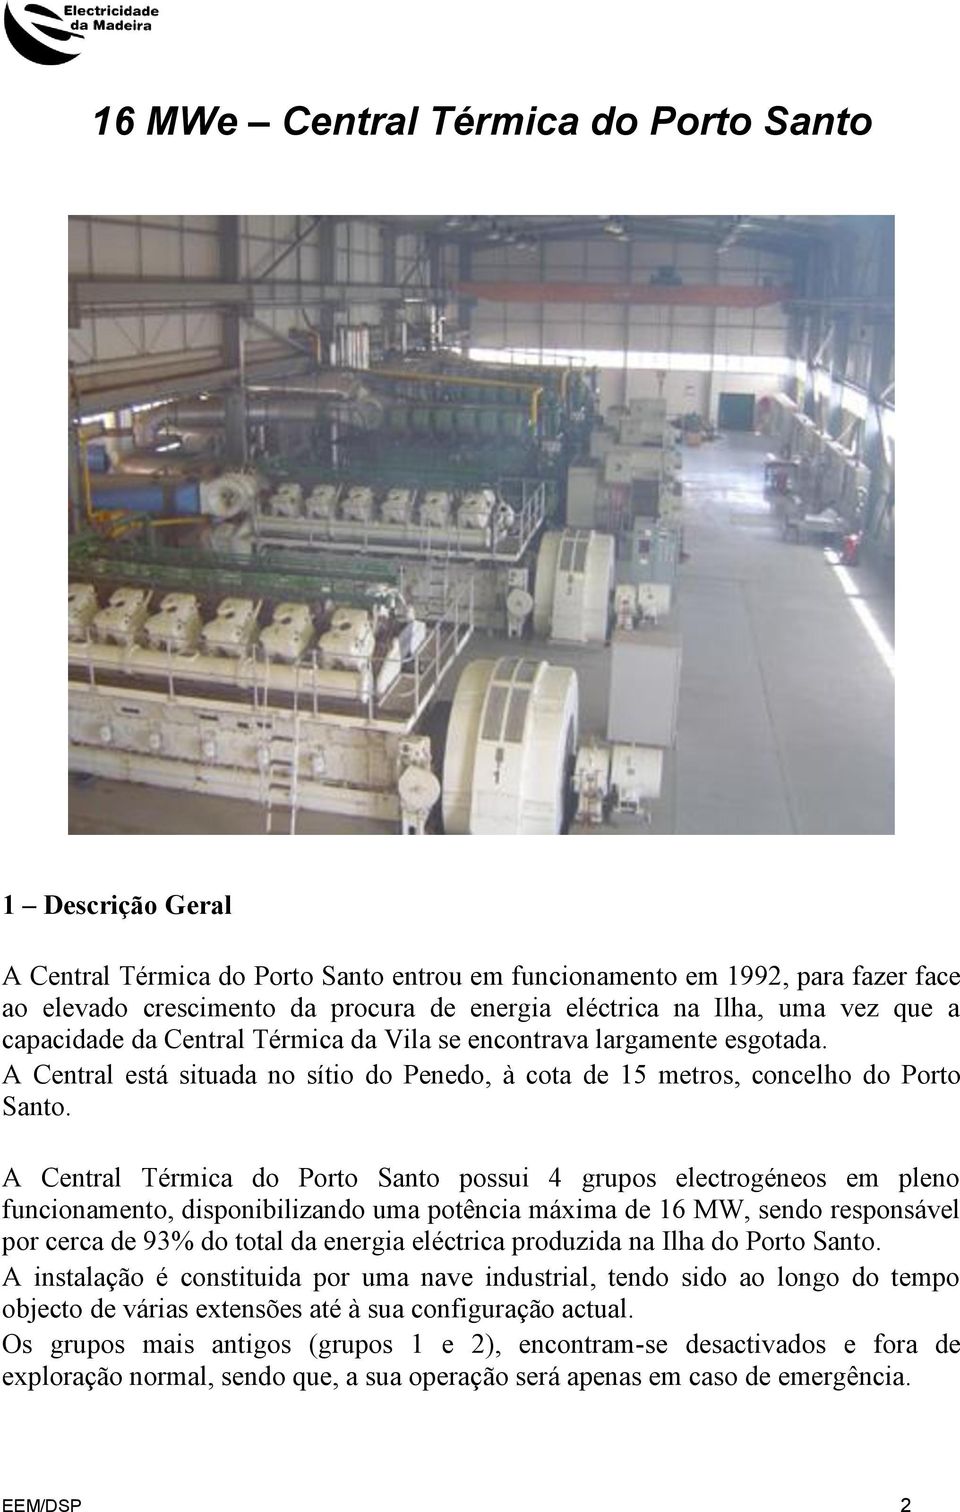 A Central Térmica do Porto Santo possui 4 grupos electrogéneos em pleno funcionamento, disponibilizando uma potência máxima de 16 MW, sendo responsável por cerca de 93% do total da energia eléctrica